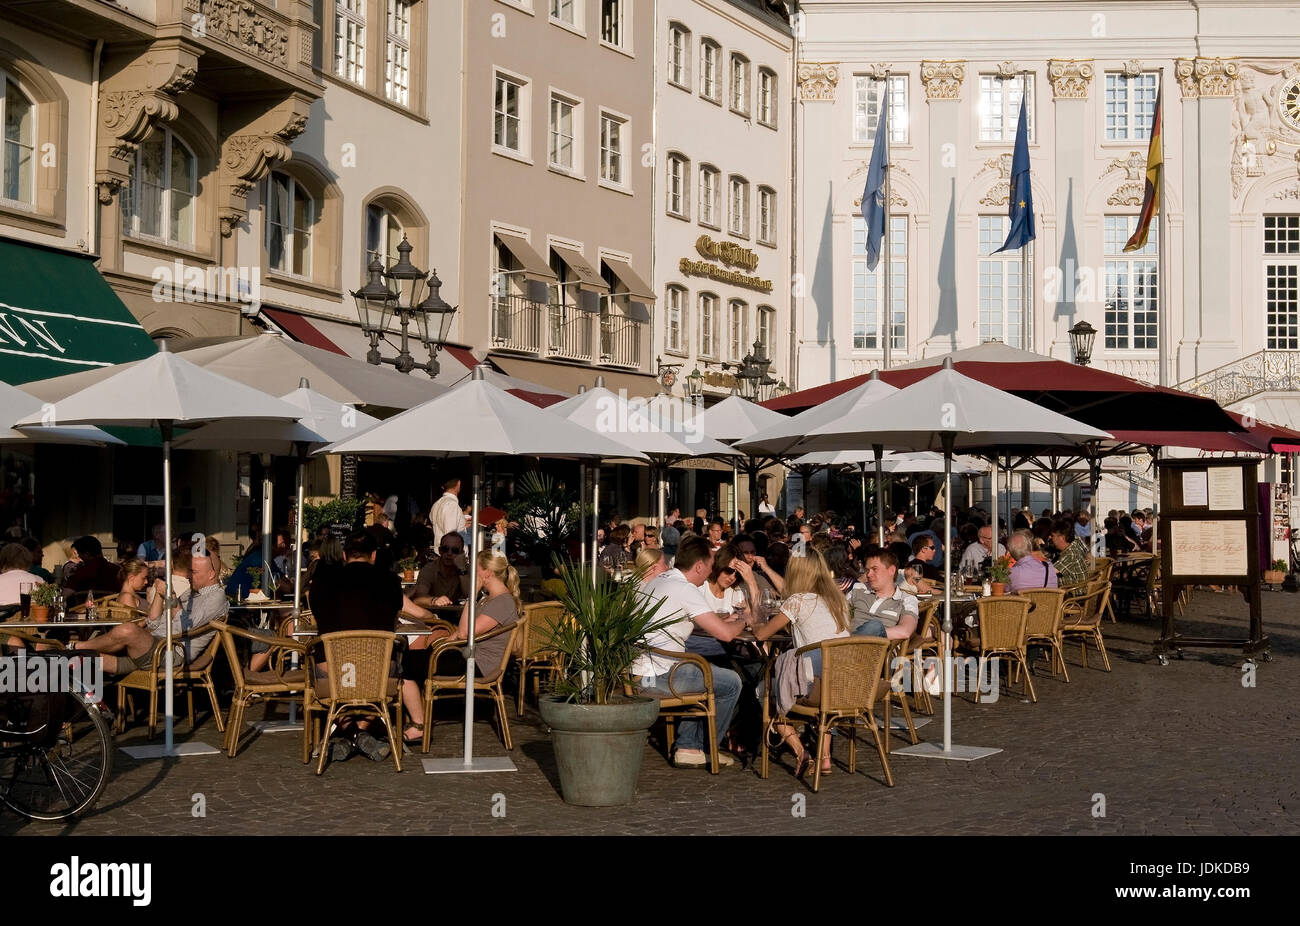 Europe, Germany, North Rhine-Westphalia, Bonn, market, Old Town, street cafe, , Europa, Deutschland, Nordrhein-Westfalen, Markt, Altstadt, Straßencafe Stock Photo